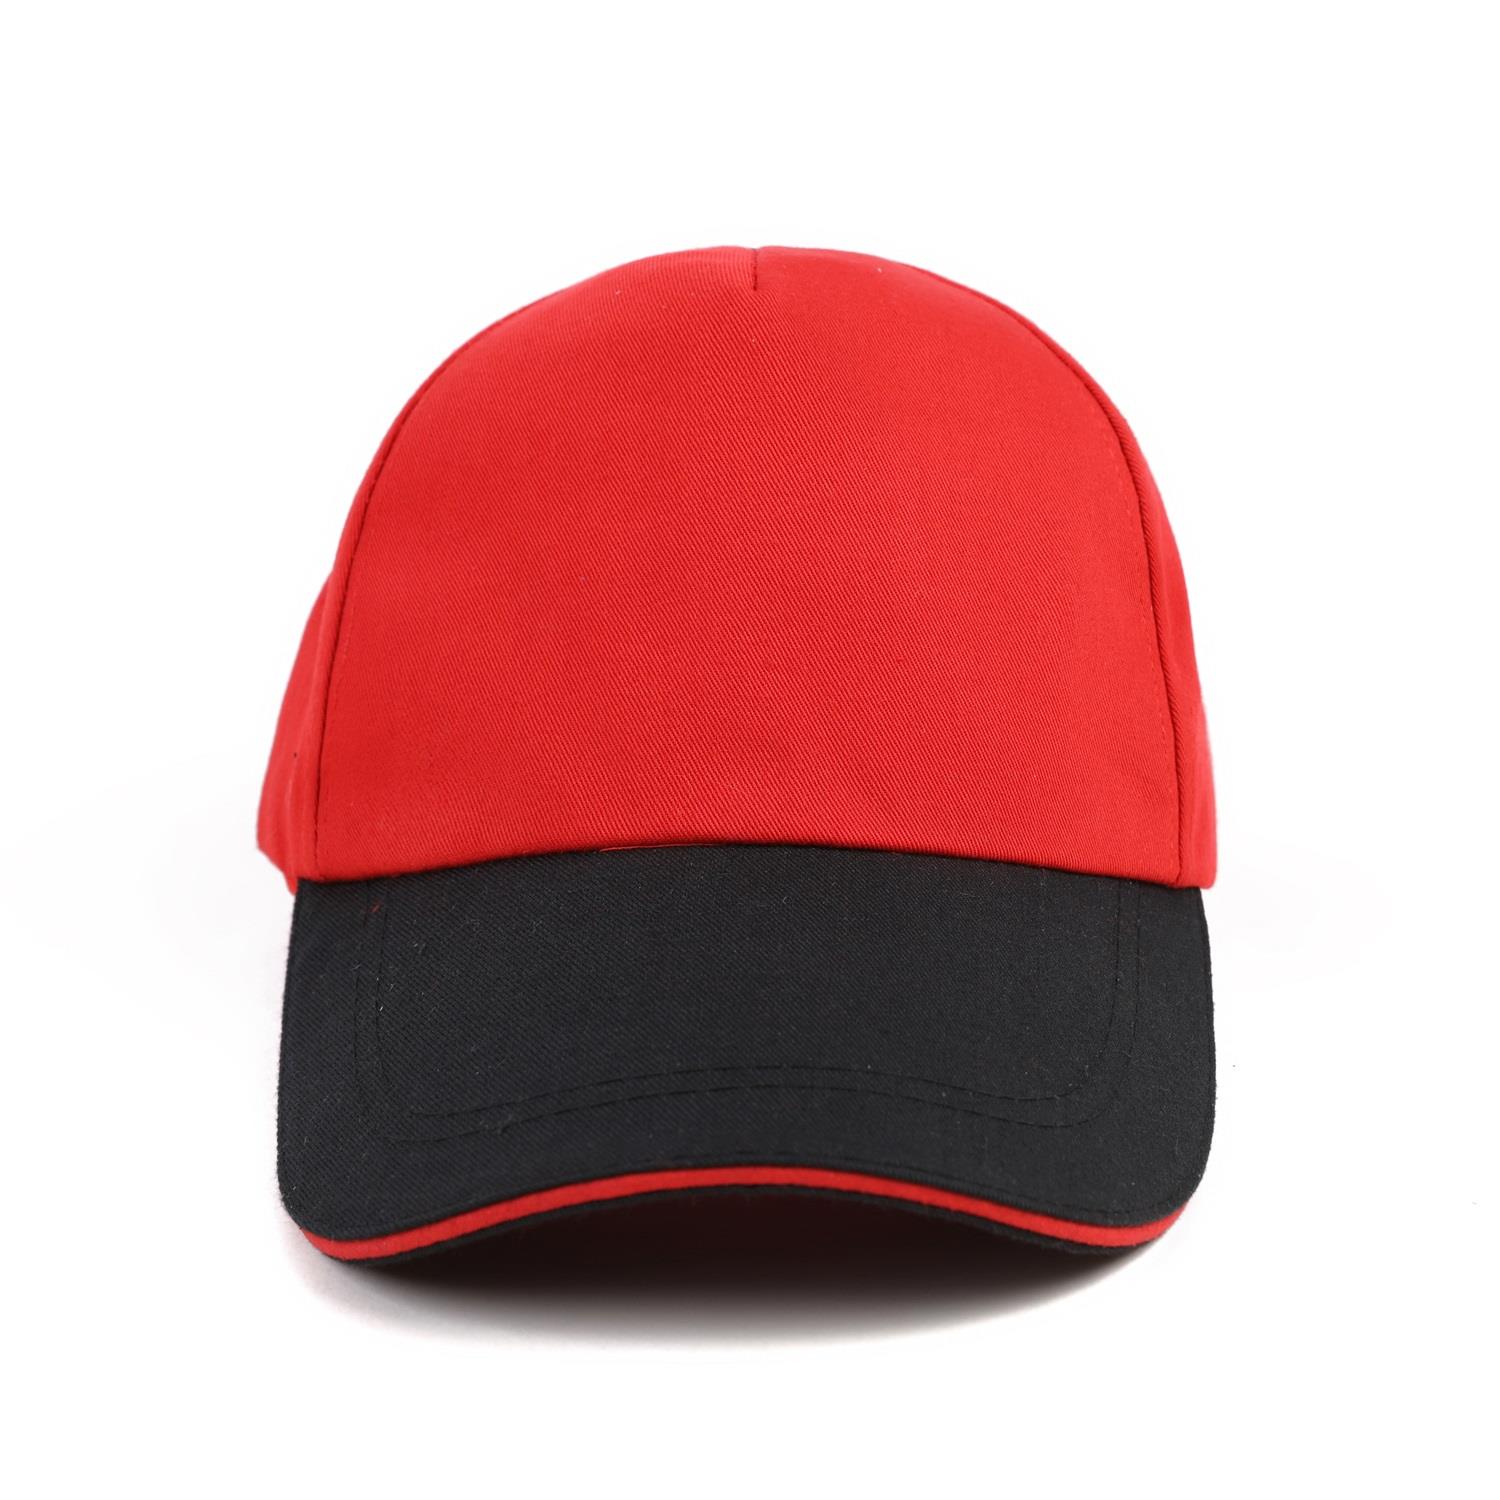 上海帽子规格